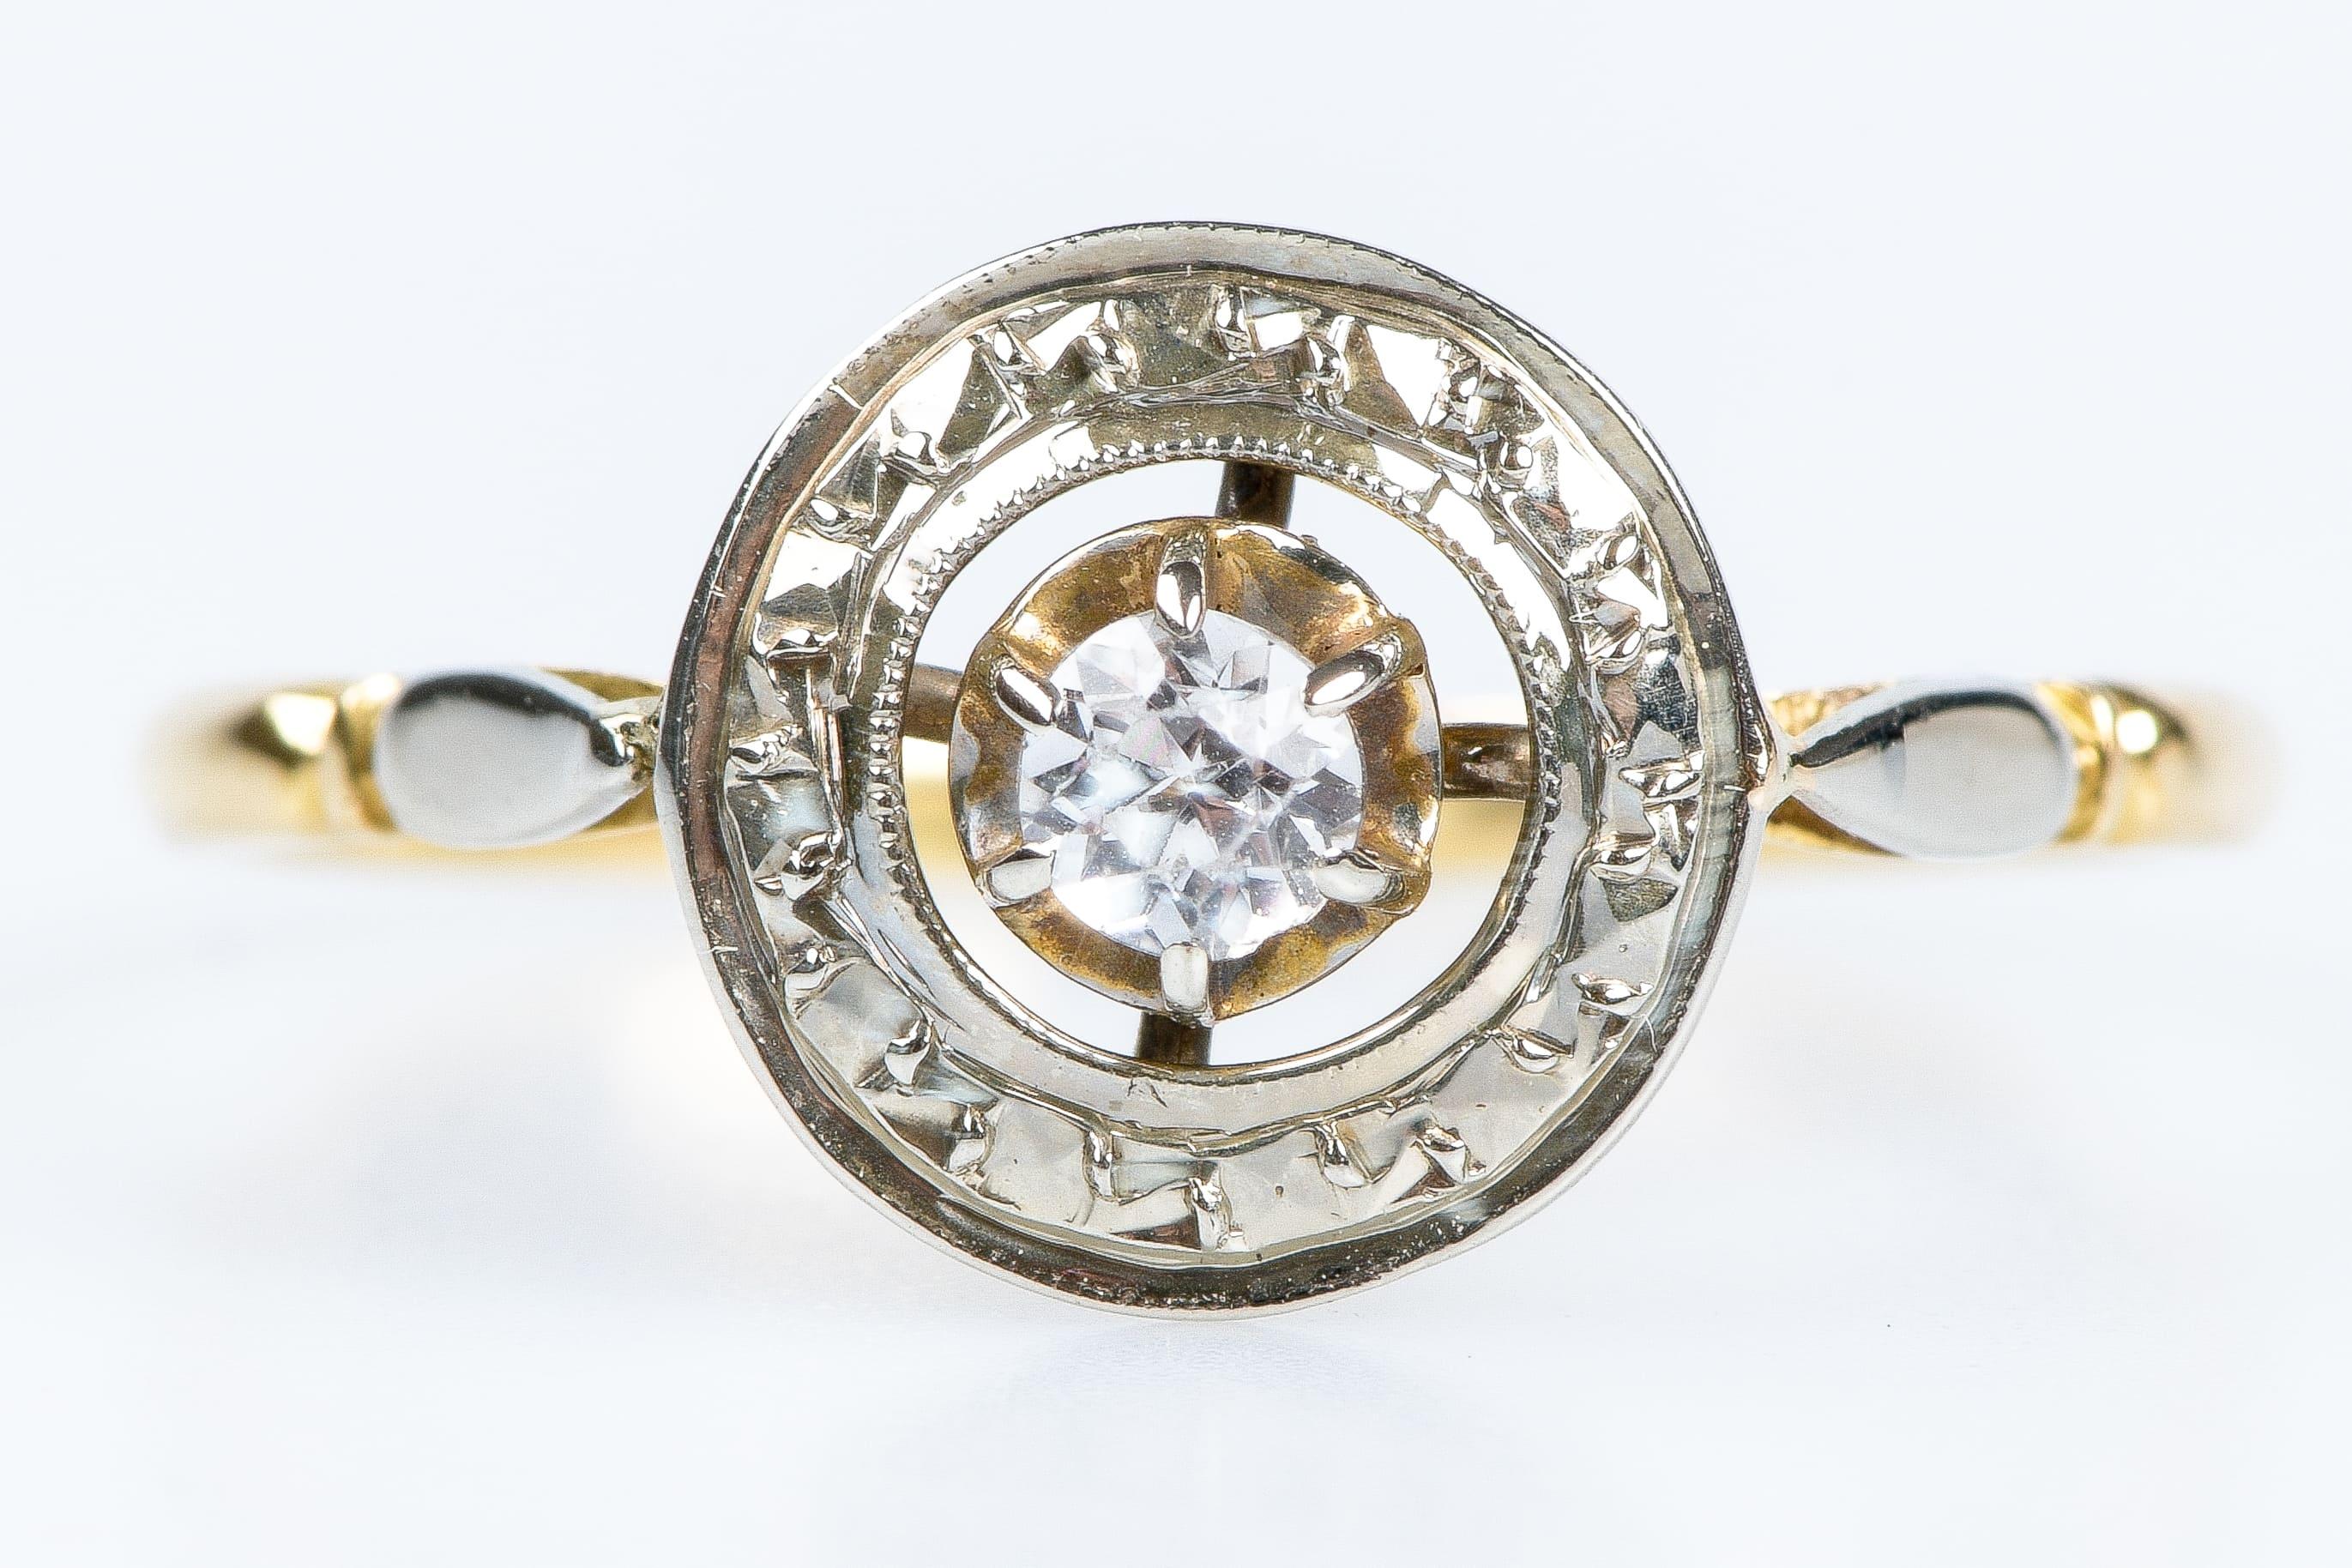 Antiker Ring aus 18 Karat Gelbgold, verziert mit Zirkoniumoxid.
Das Oxid ist in der Mitte des Juwels in einem mit Reliefs verzierten Kreis angebracht. Mehrere Details machen diesen Ring einzigartig. Dieses Schmuckstück ist sehr elegant und Vintage,